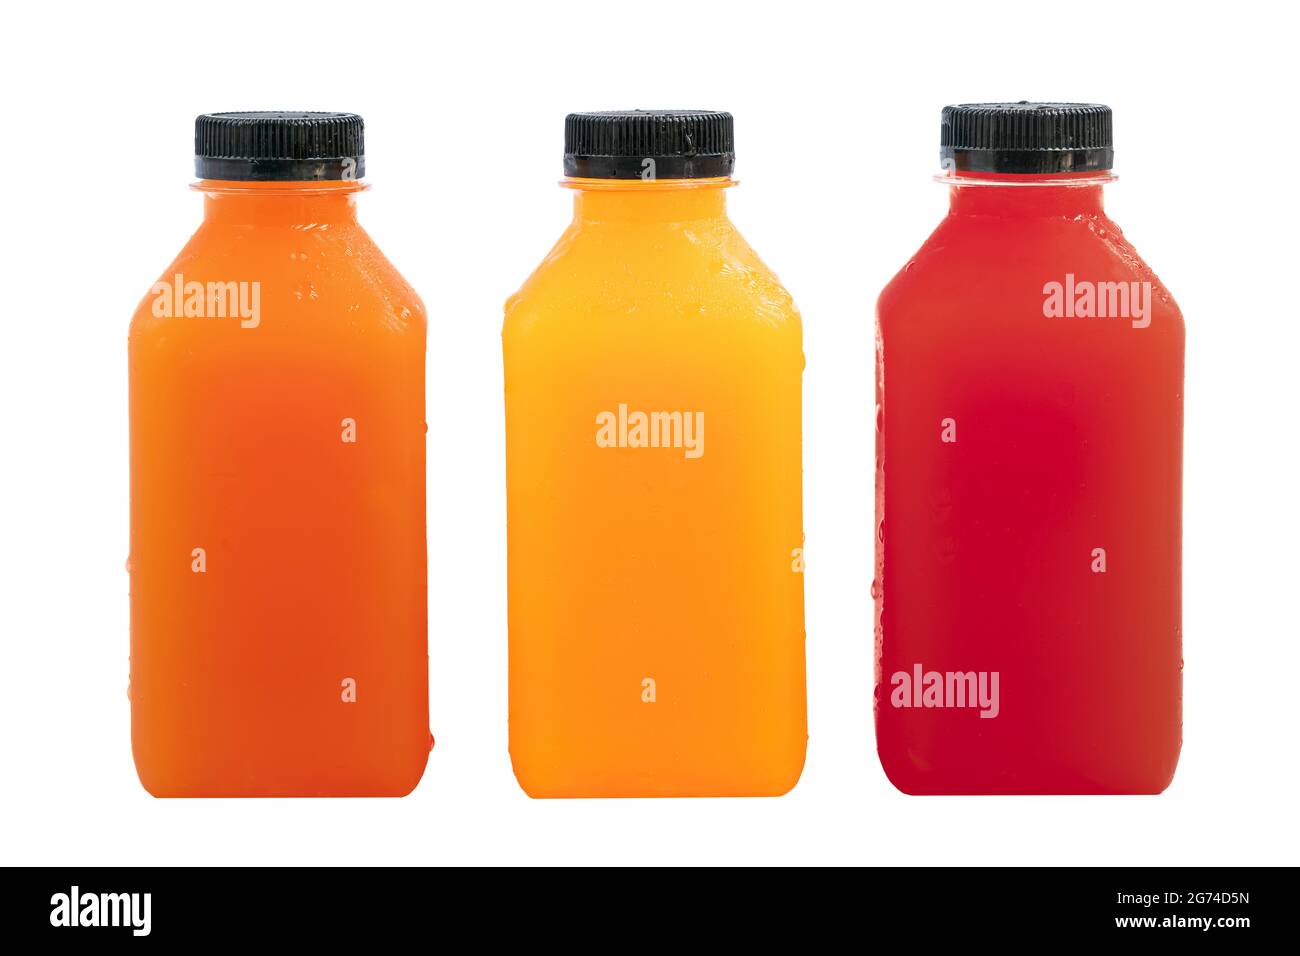 Frischer Fruchtsaft in kleiner klarer Plastikflasche. Würfelförmige Flaschen. Leerer Frontbereich für Branding-Etiketten. Orangensaft, Karottensaft und Rote Beete oder Stockfoto